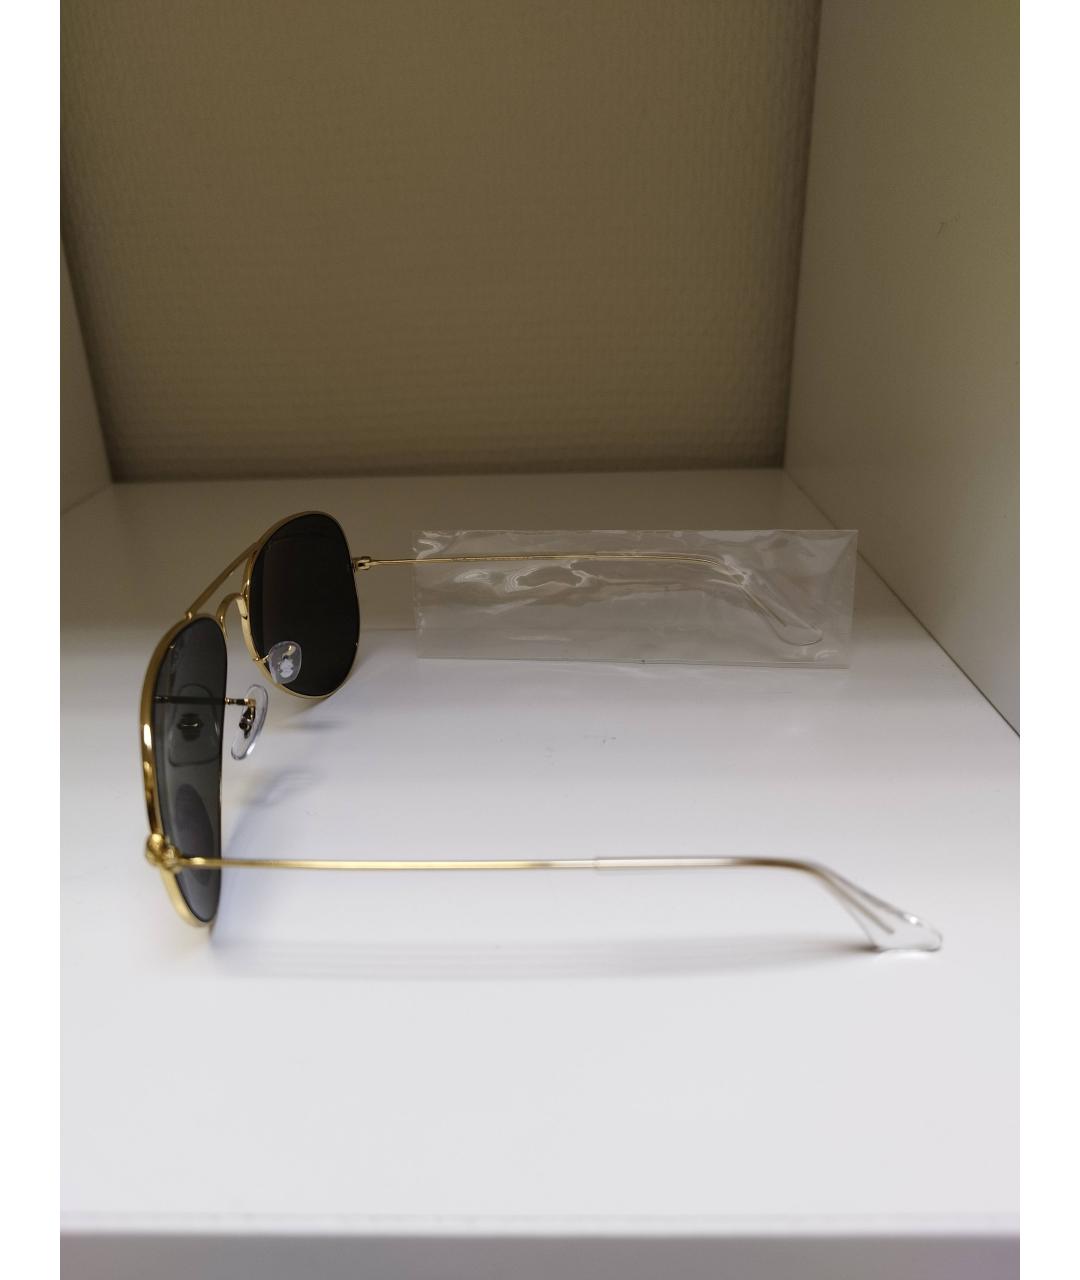 RAY BAN Золотые металлические солнцезащитные очки, фото 3